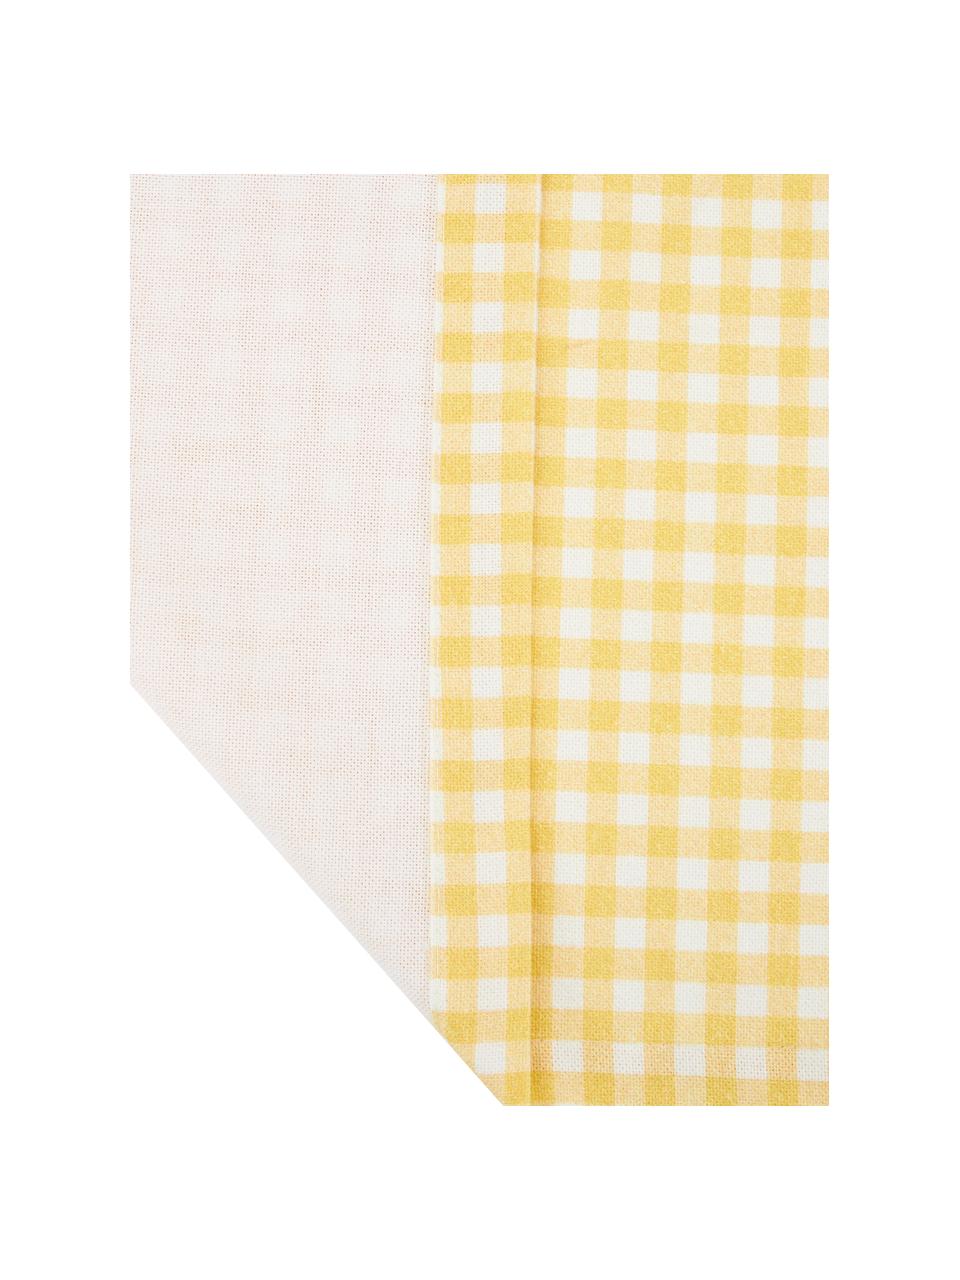 Bieżnik z bawełny Vicky, 100% bawełna, Żółty, biały, S 40 x D 145 cm